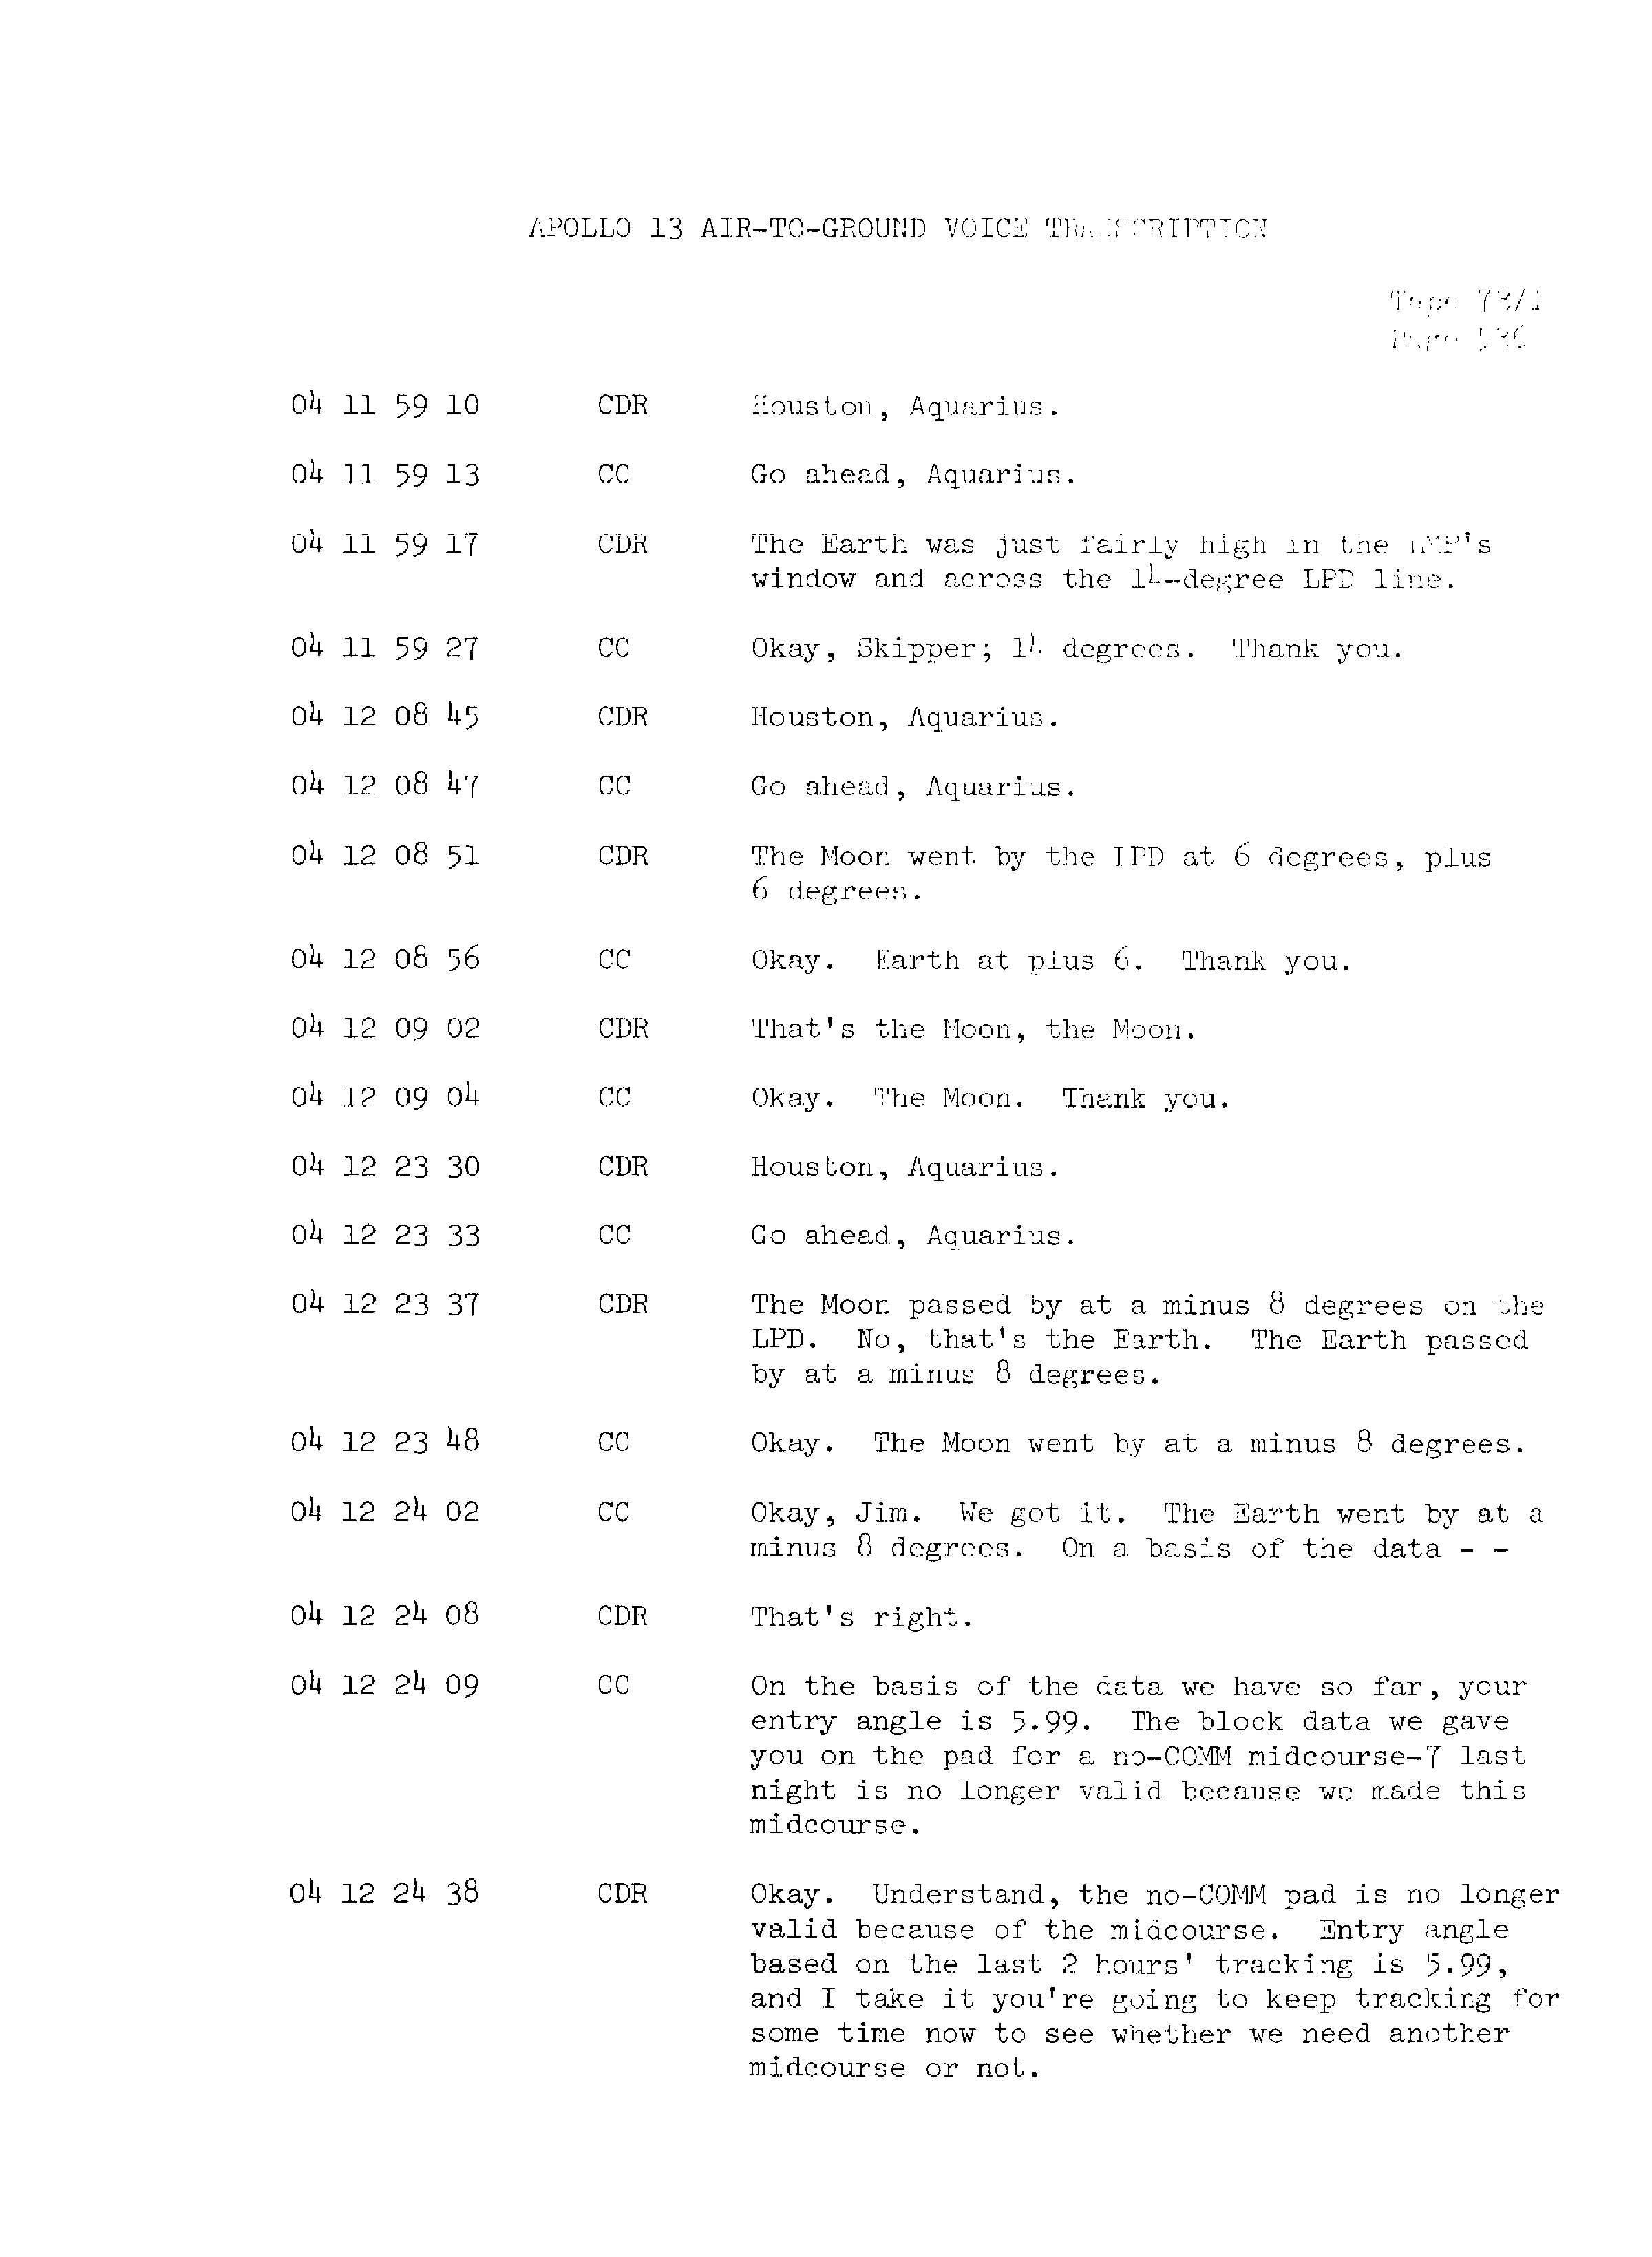 Page 543 of Apollo 13’s original transcript